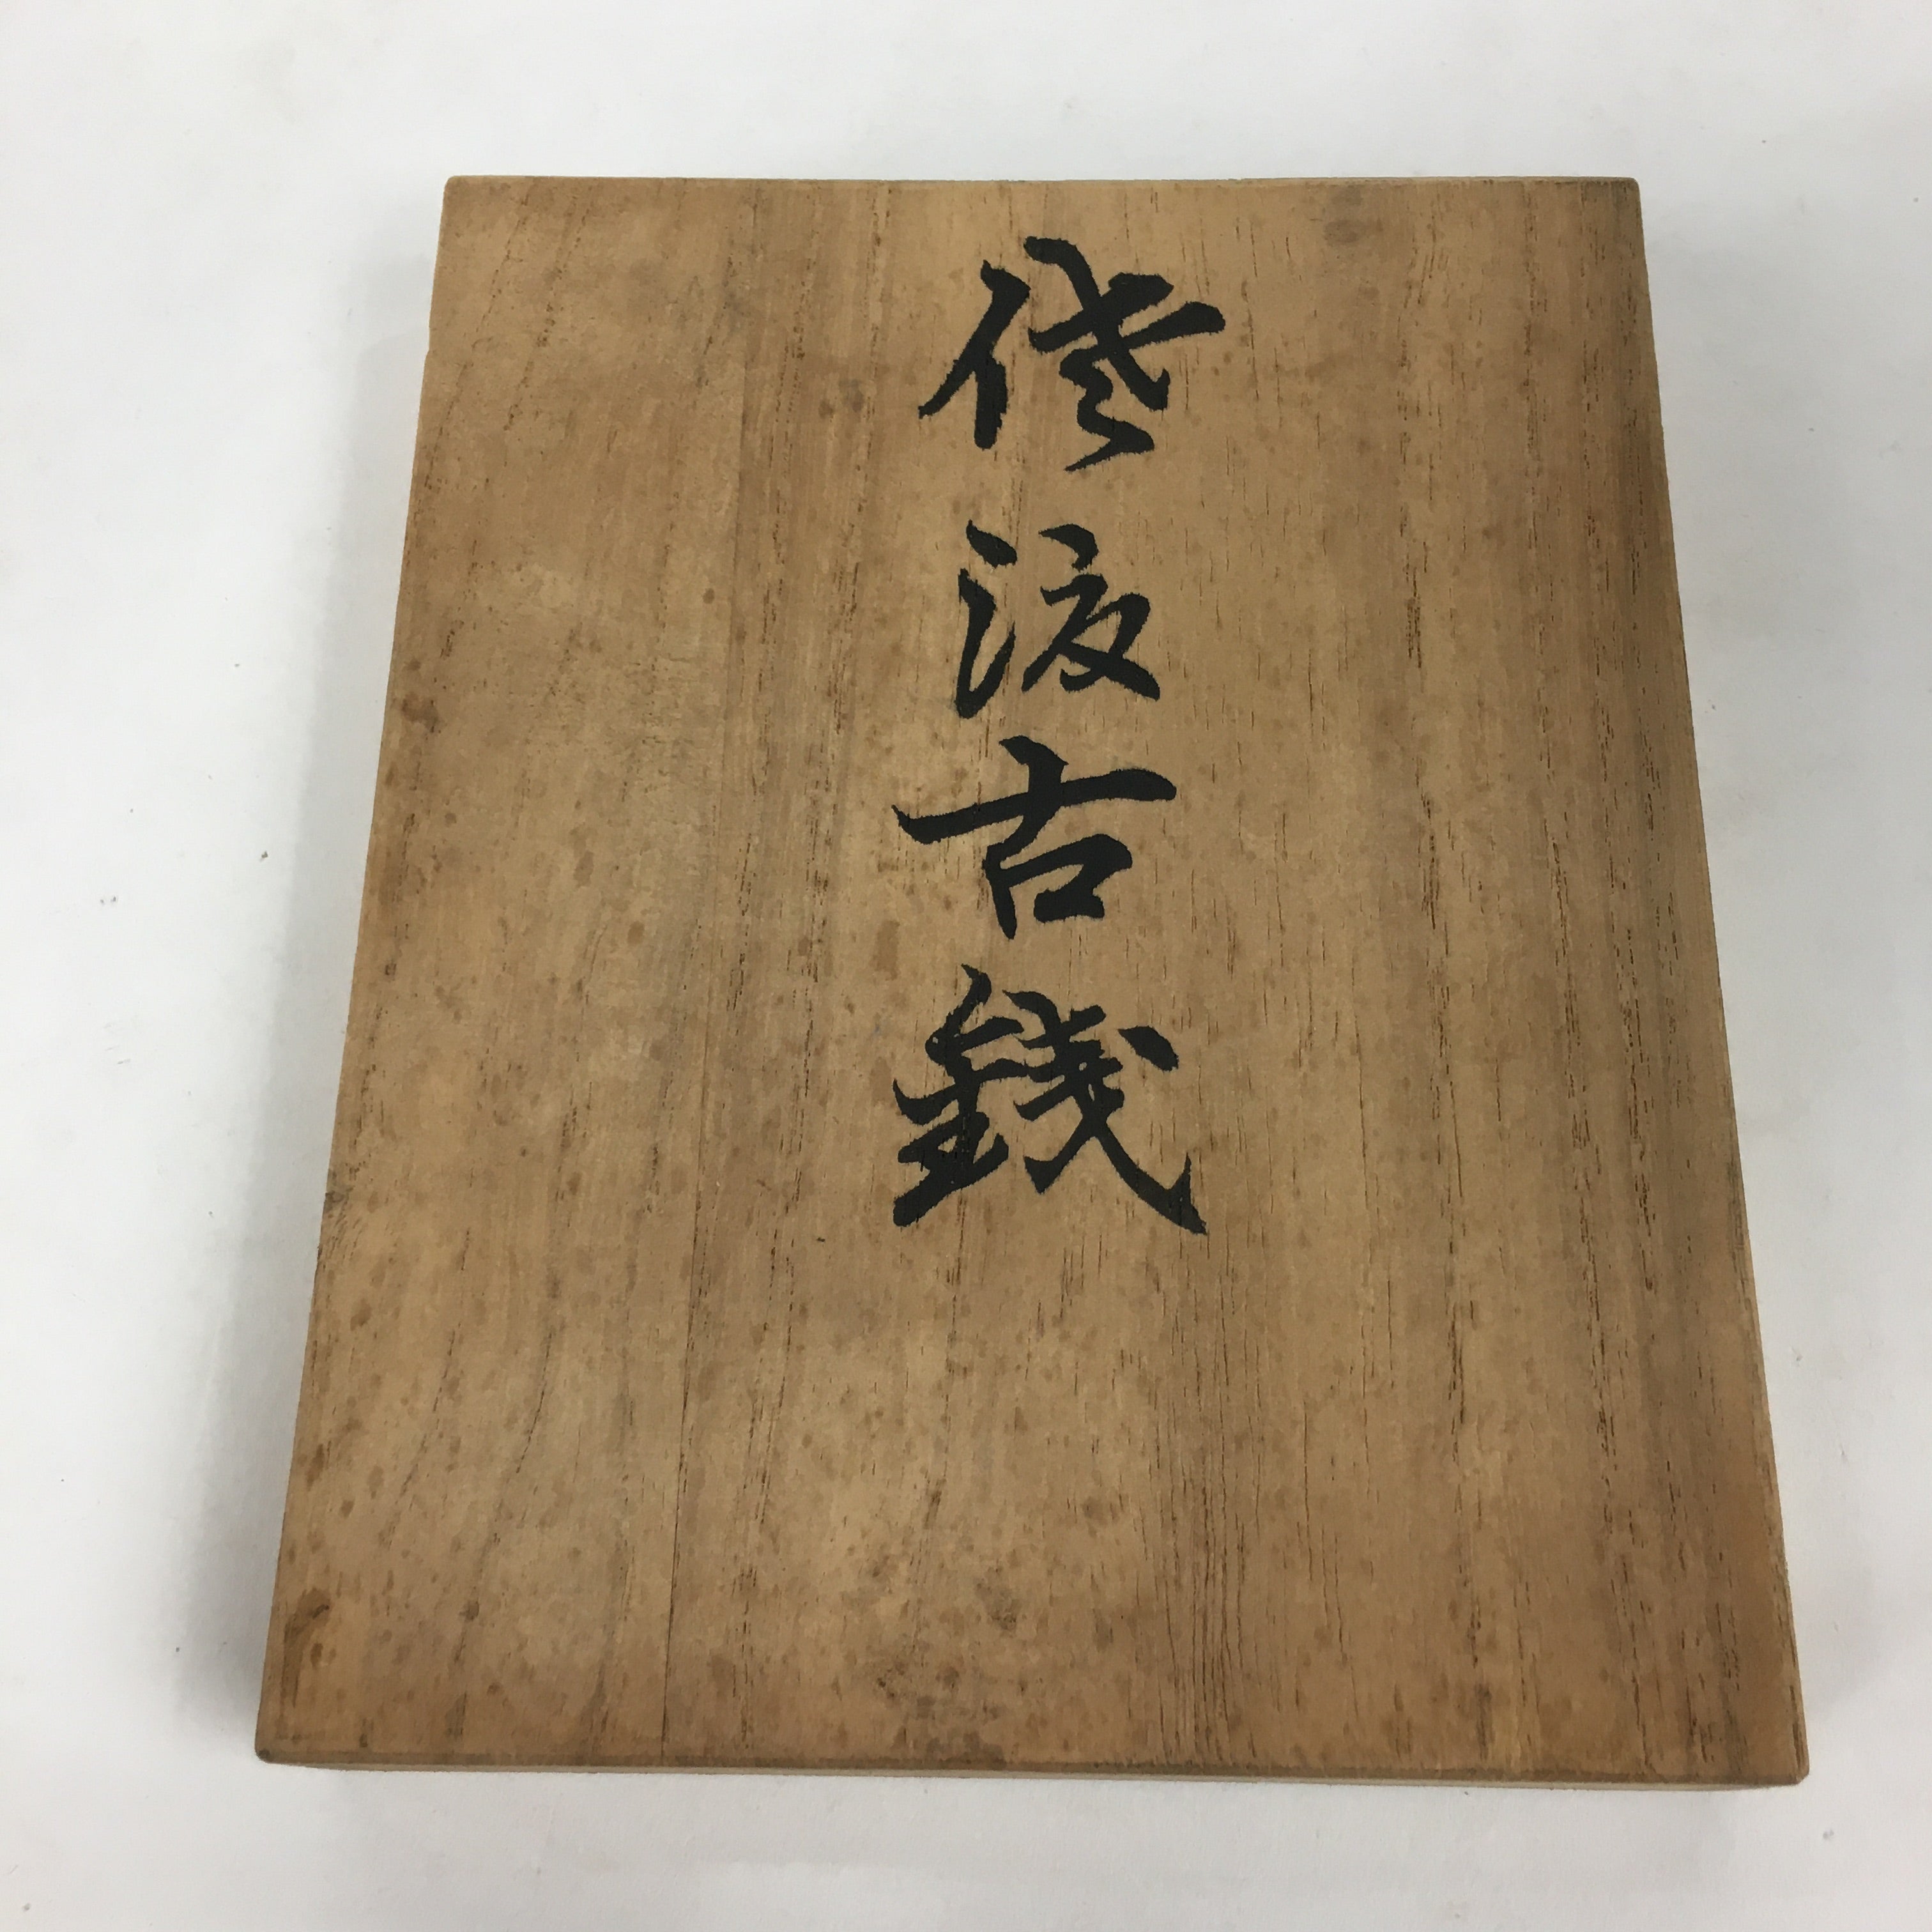 Japanese Wooden Storage Box Vtg Pottery Hako Inside 10x13.2x0.7cm WB913